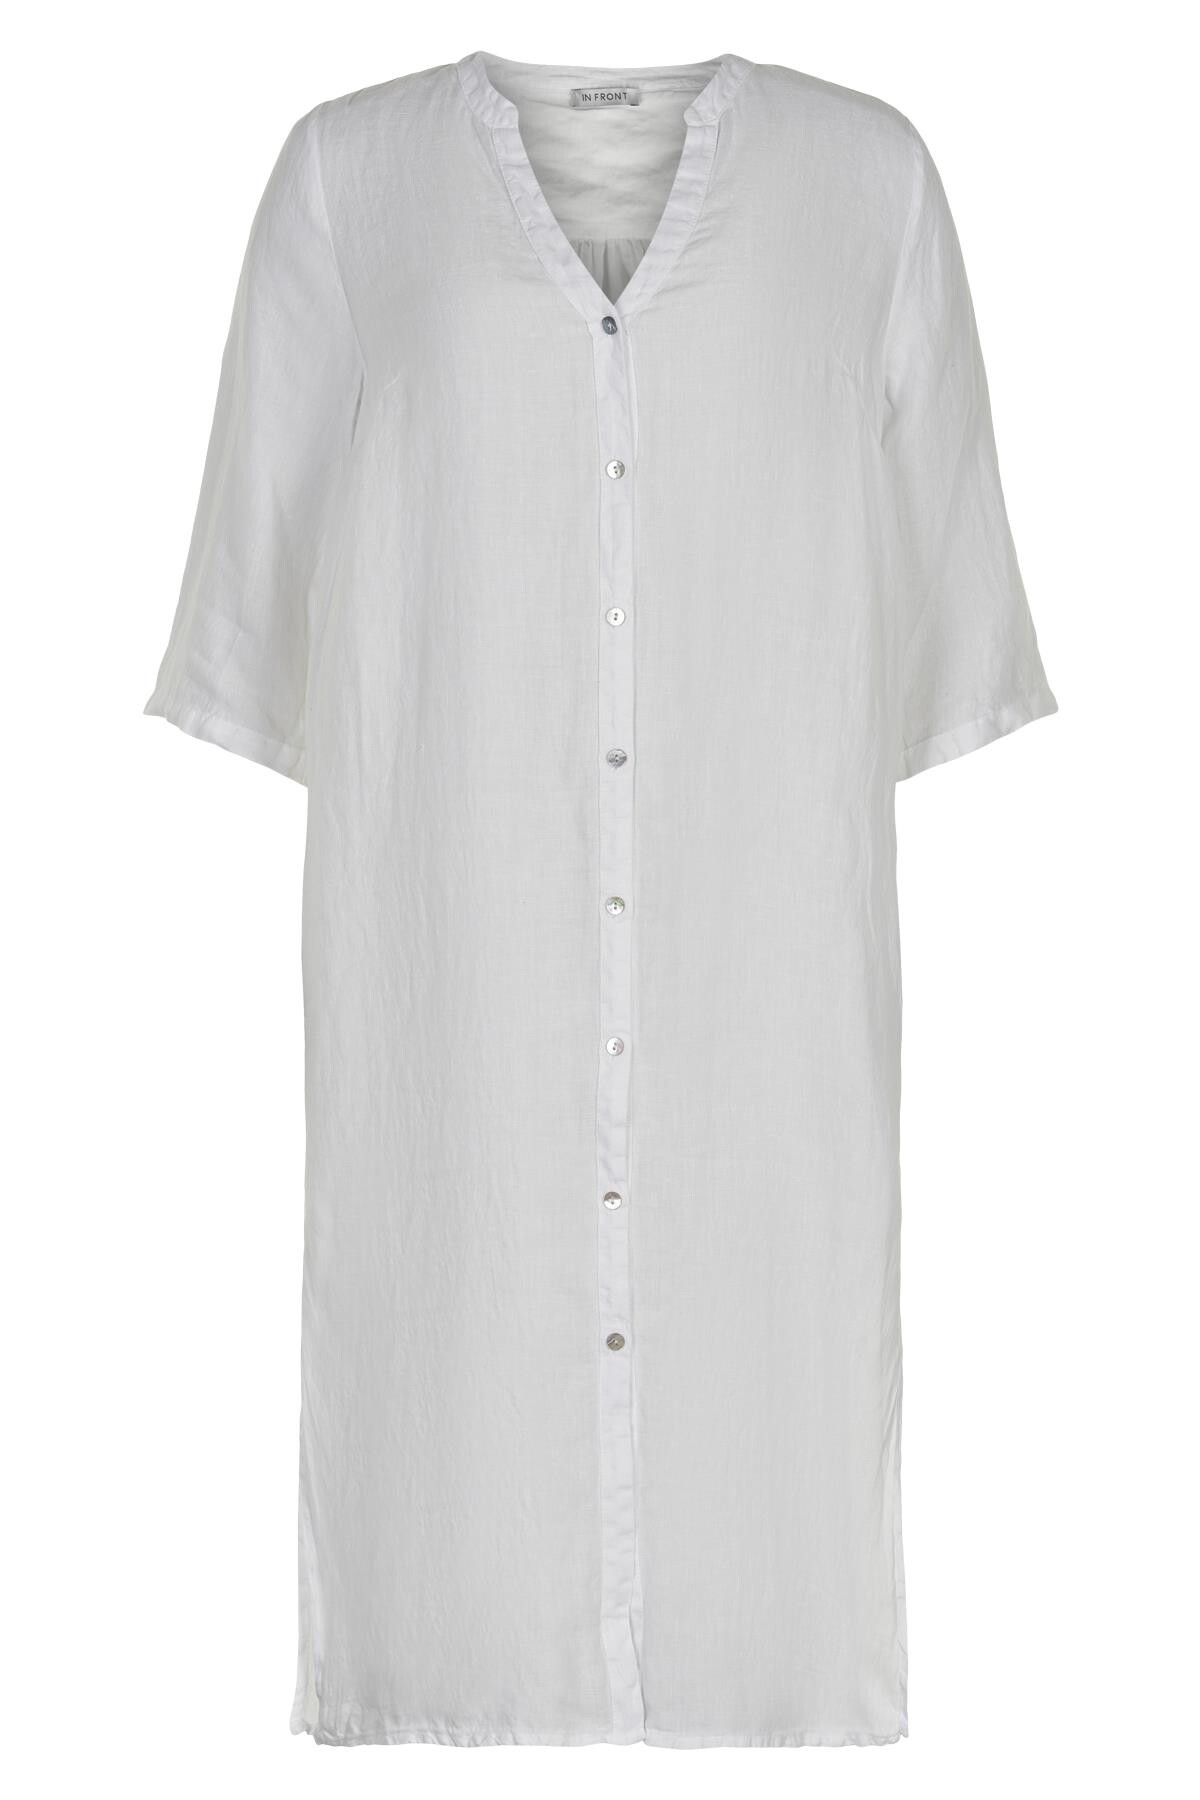 Se IN FRONT Lino Lang Skjortekjole, Farve: White, Størrelse: S, Dame hos Infront Women